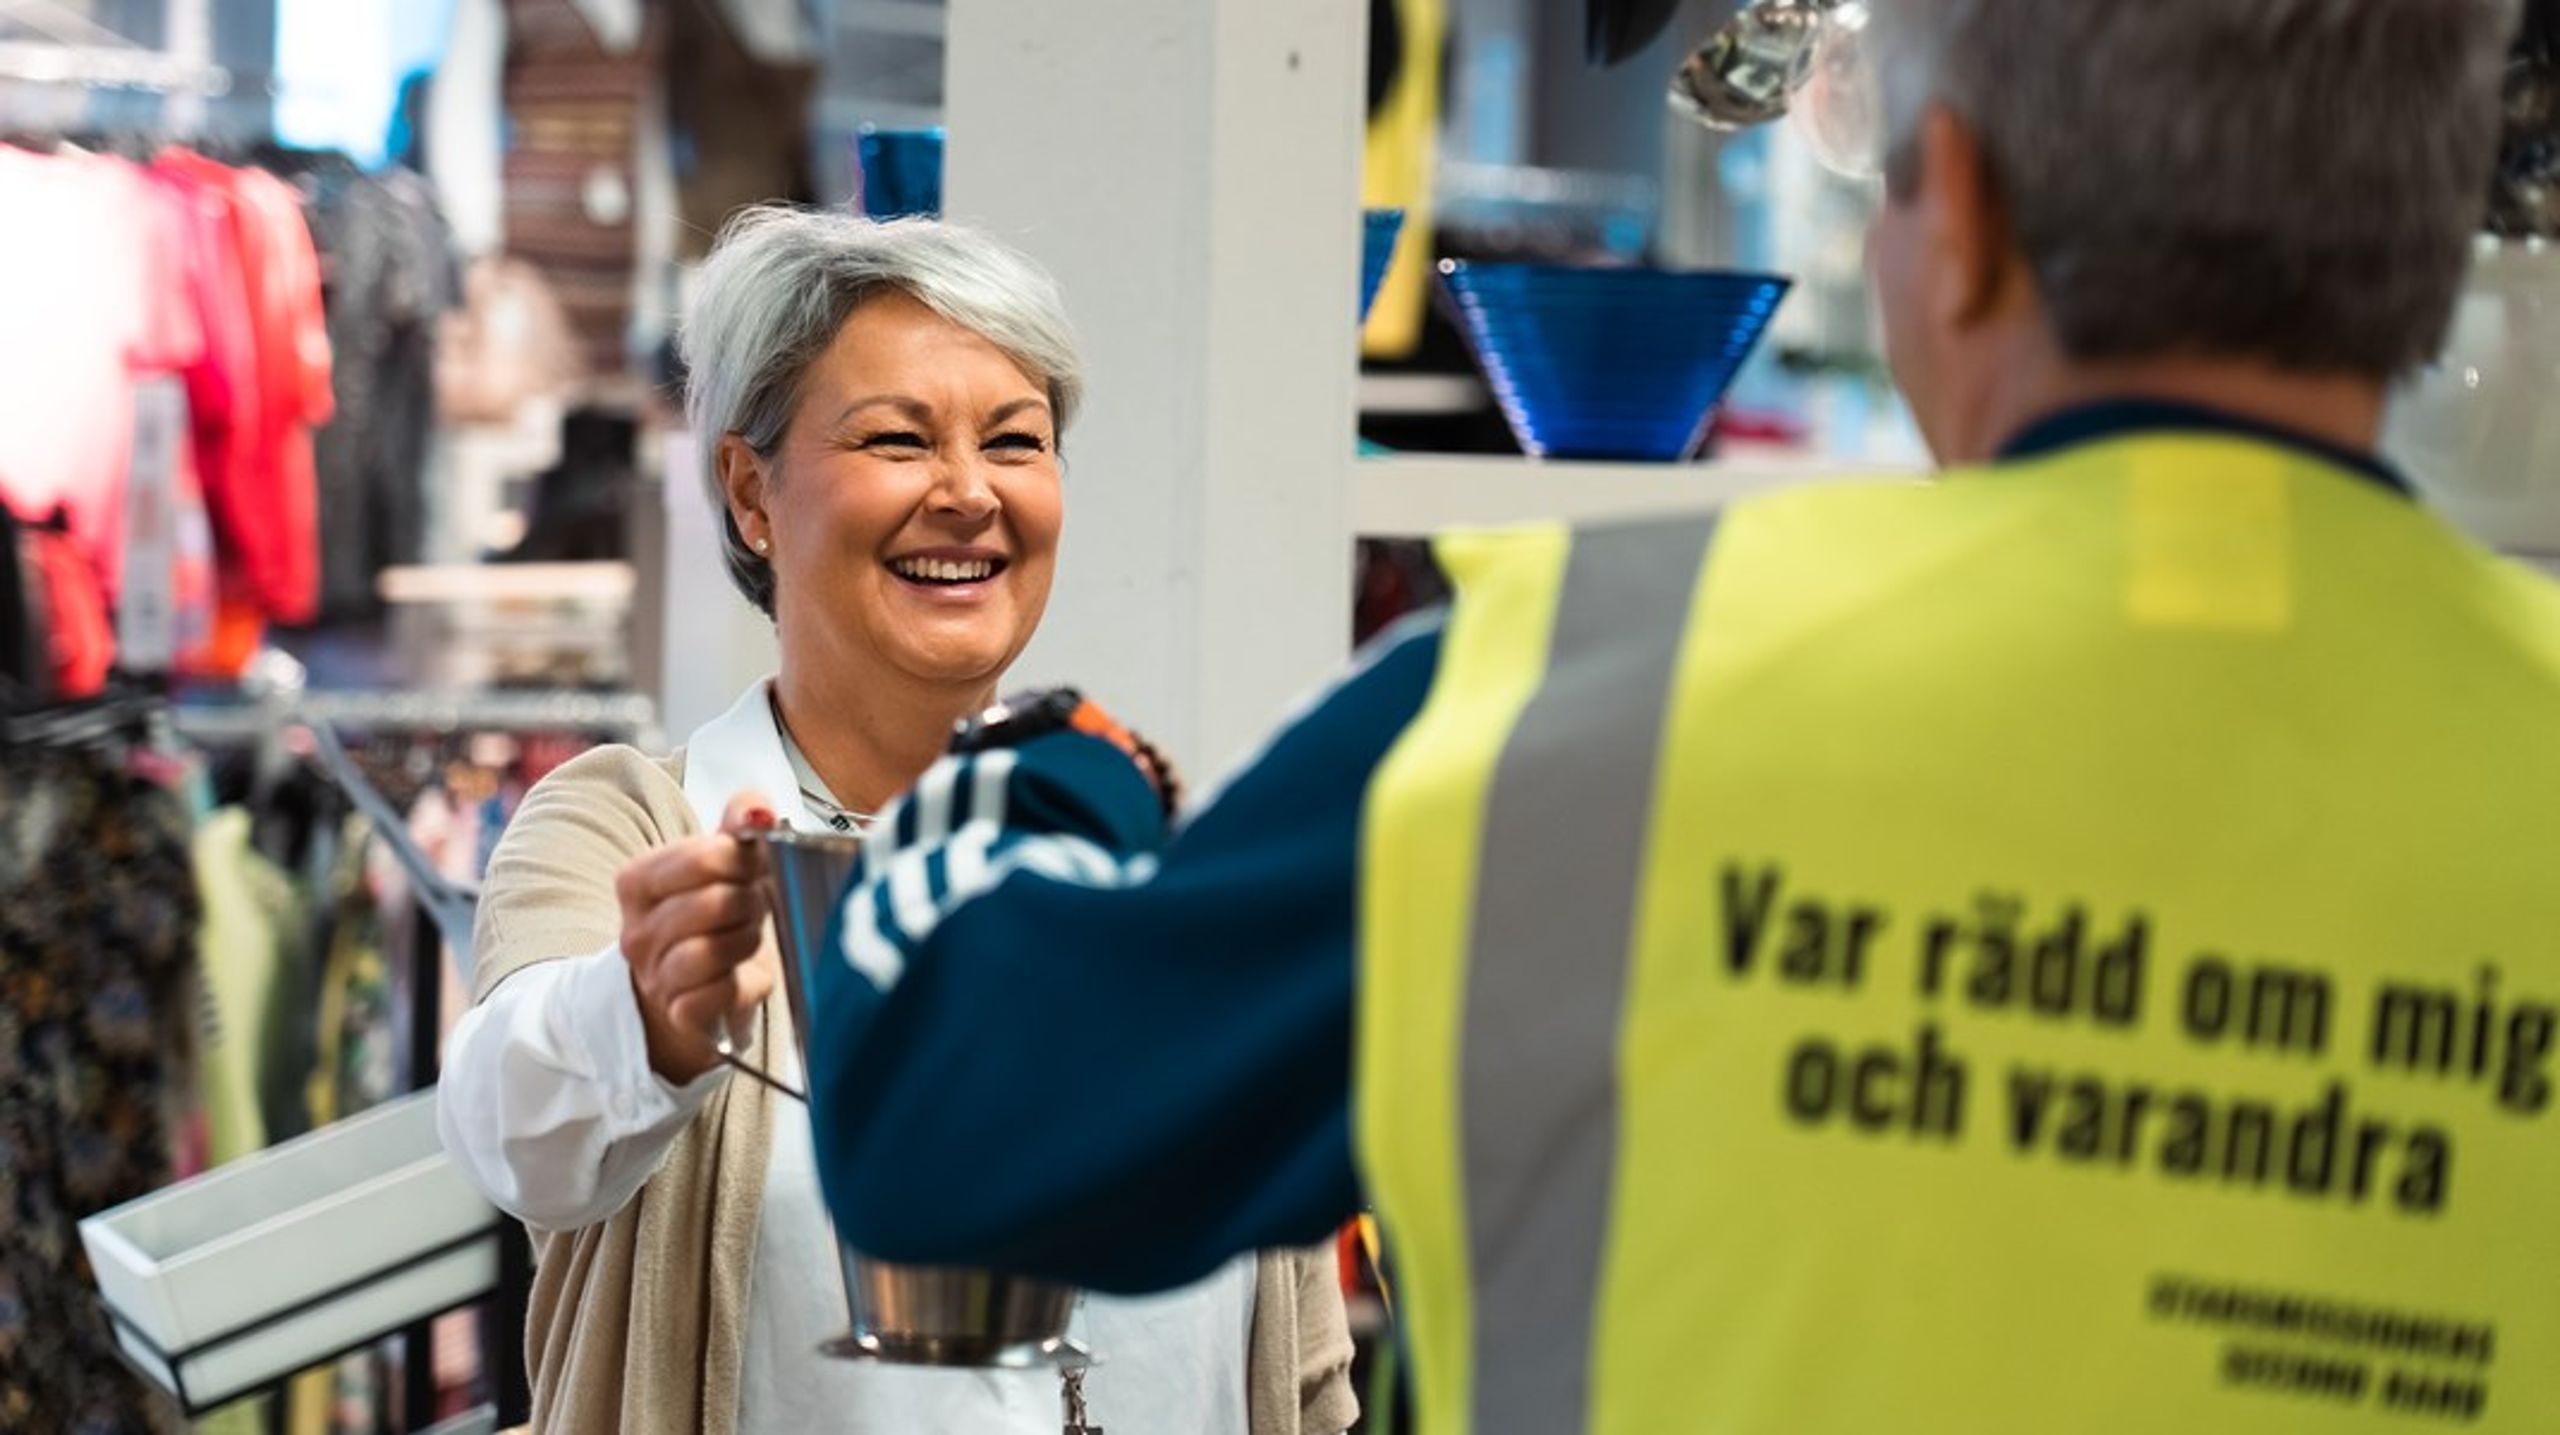 Sveriges stadsmissioner är en av civilsamhällets mer kända sociala organisationer. Här en bild från en av deras second hand-butiker. Riksrevisionen inleder en granskning av det offentliga stödet från fyra myndigheter.&nbsp;